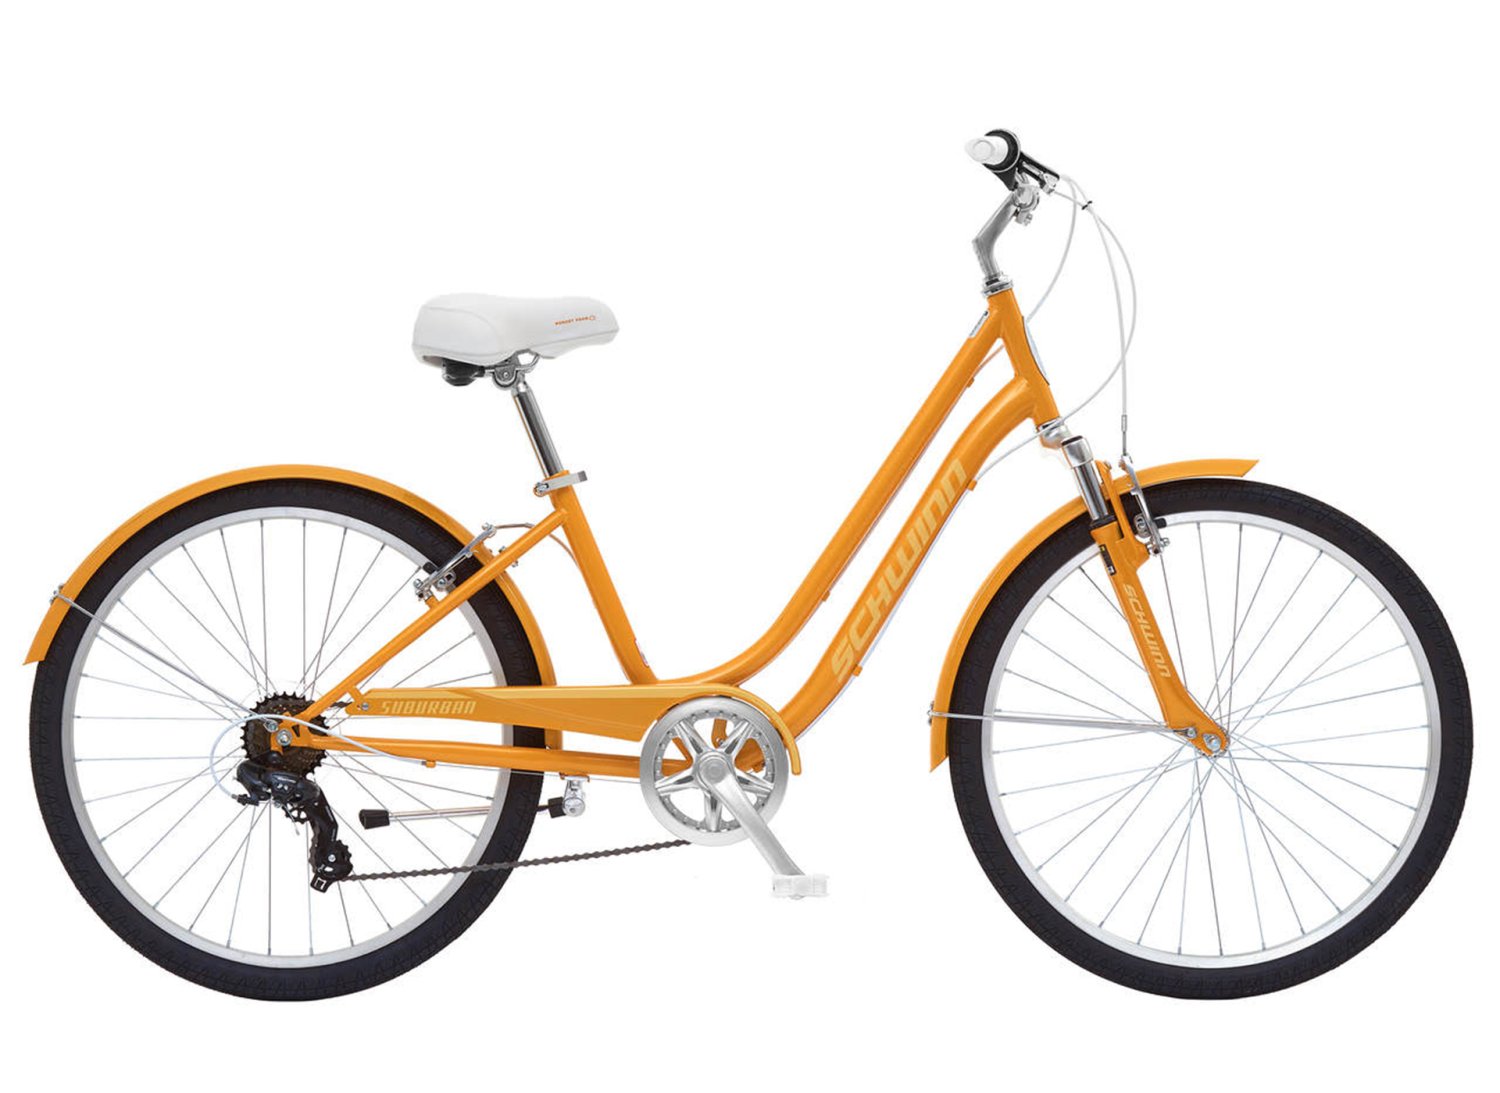 Велосипед женский Schwinn Suburban Women, 26'', 7 скоростей, оранжевый, S5483CINT женский велосипед haro lxi flow 1 st 26 год 2021 серебристый ростовка 15